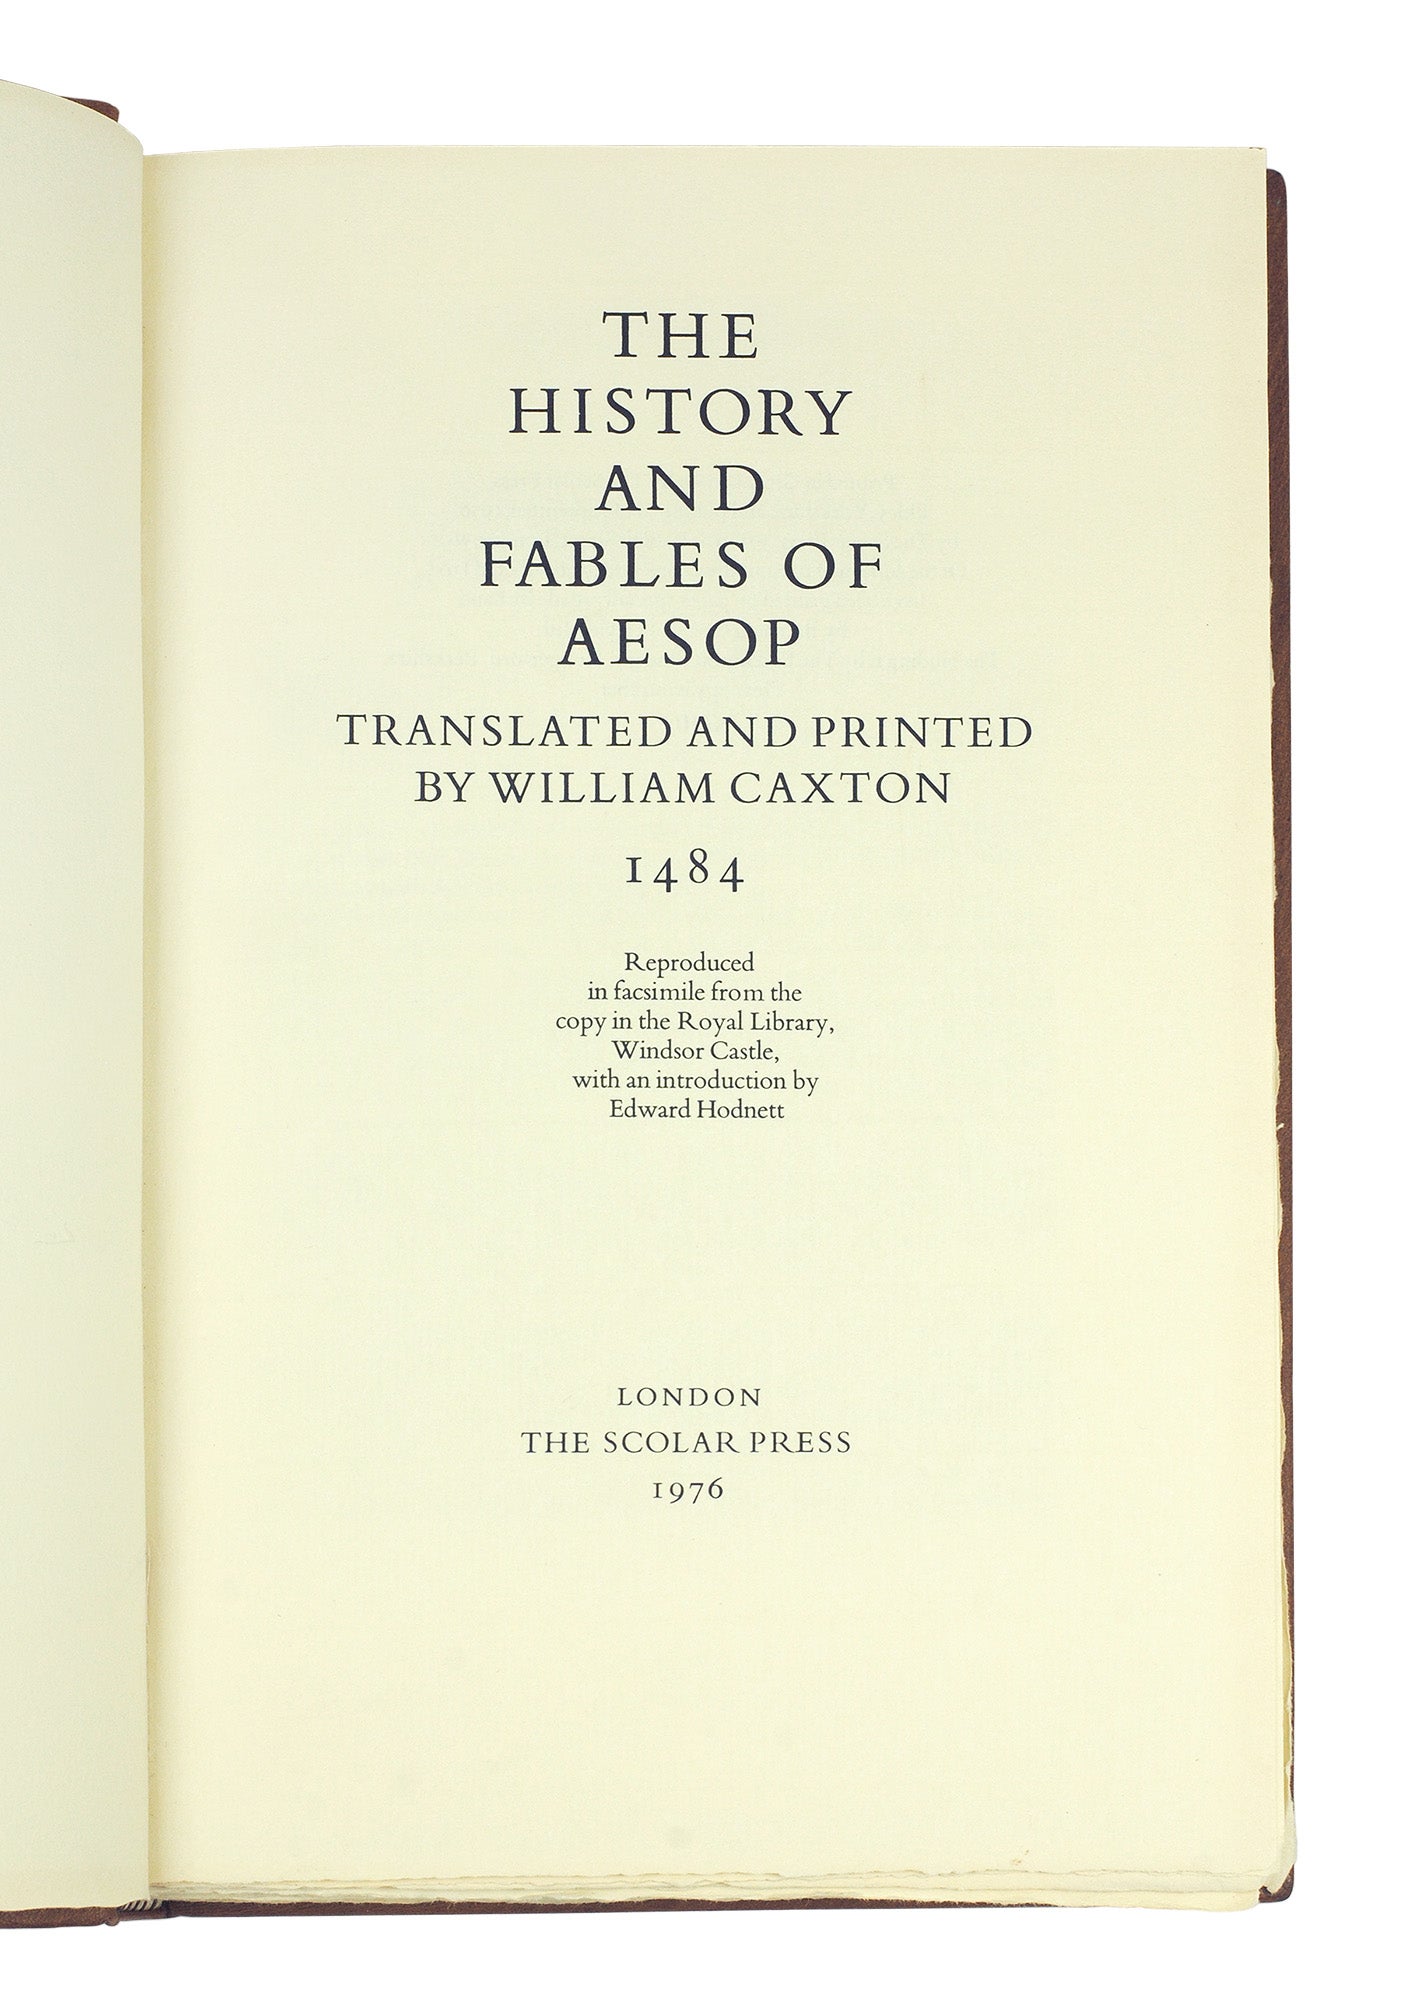 定番送料無料カクストン『The History and Fables of Aesop』限定500部 1976年刊 初期印刷本「イソップ寓話」インキュナブラ ウィリアム・キャクストン 画集